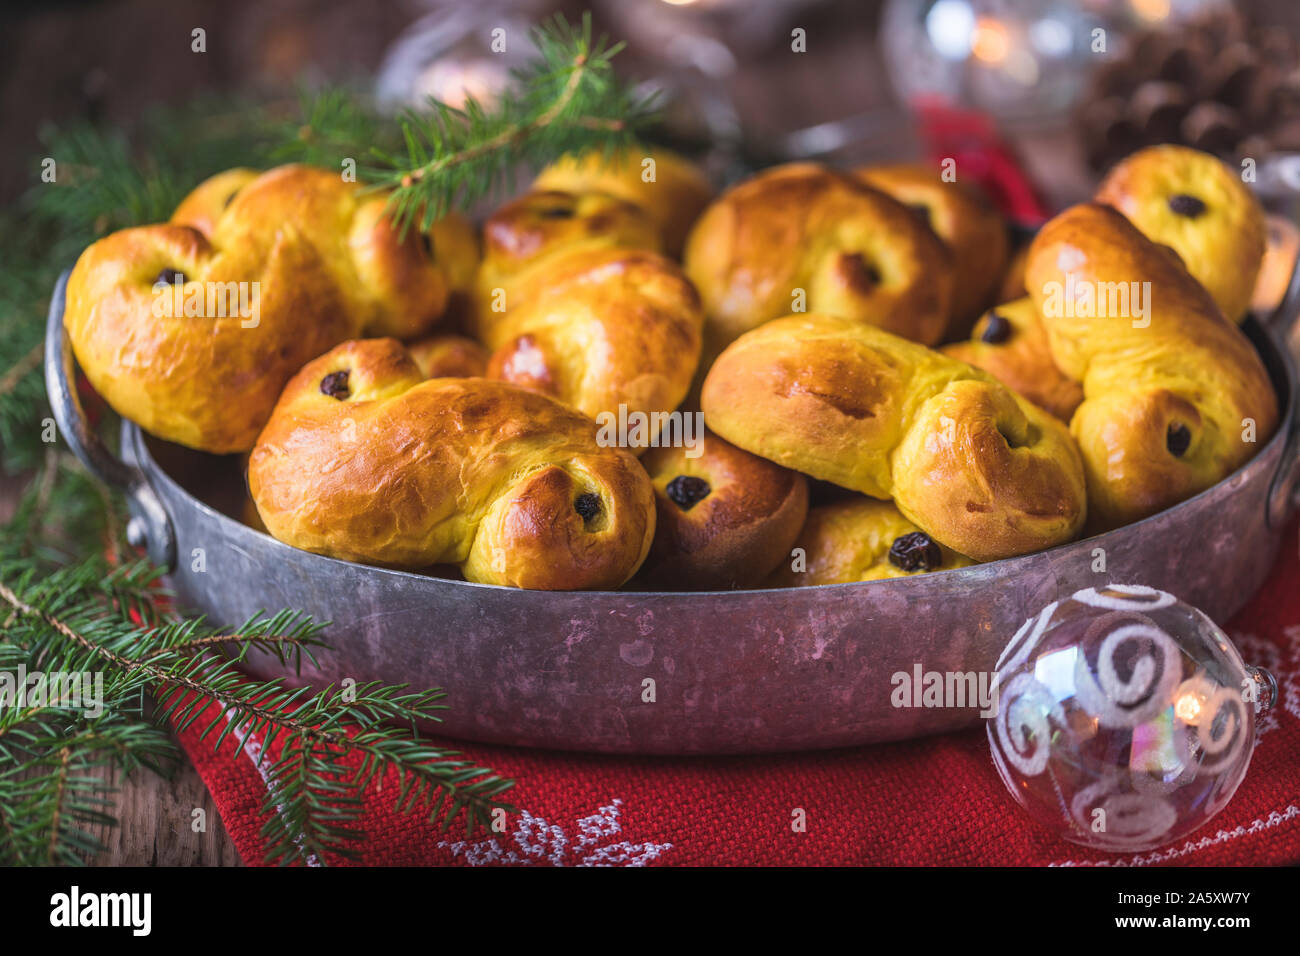 Ein Fach des frisch gebackenen hausgemachte Schwedische traditionelle Safran Brötchen, auch als lussekatter oder lussebullar bekannt. Die gelbe Brötchen haben Rosinen und sind Shap Stockfoto